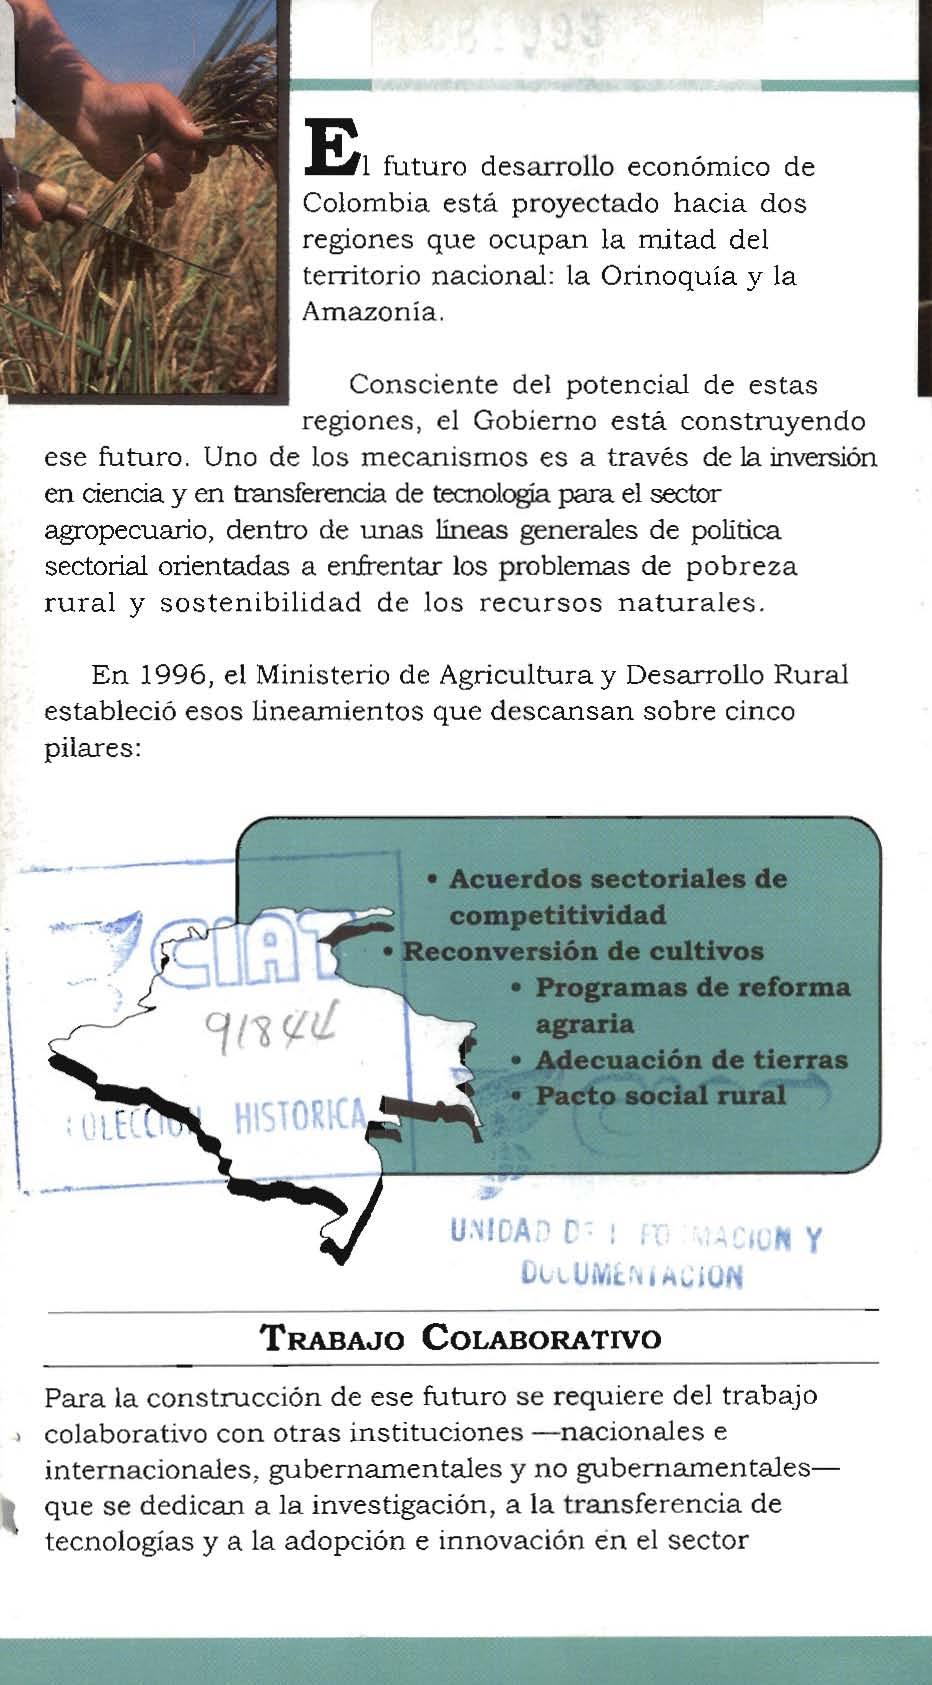 El futuro desarrollo económico de Colombia está proyectado hacia dos regiones que ocupan la mitad del territorio nacional: la Orinoquía y la Amazonia, Consciente del potencial de estas regiones, el